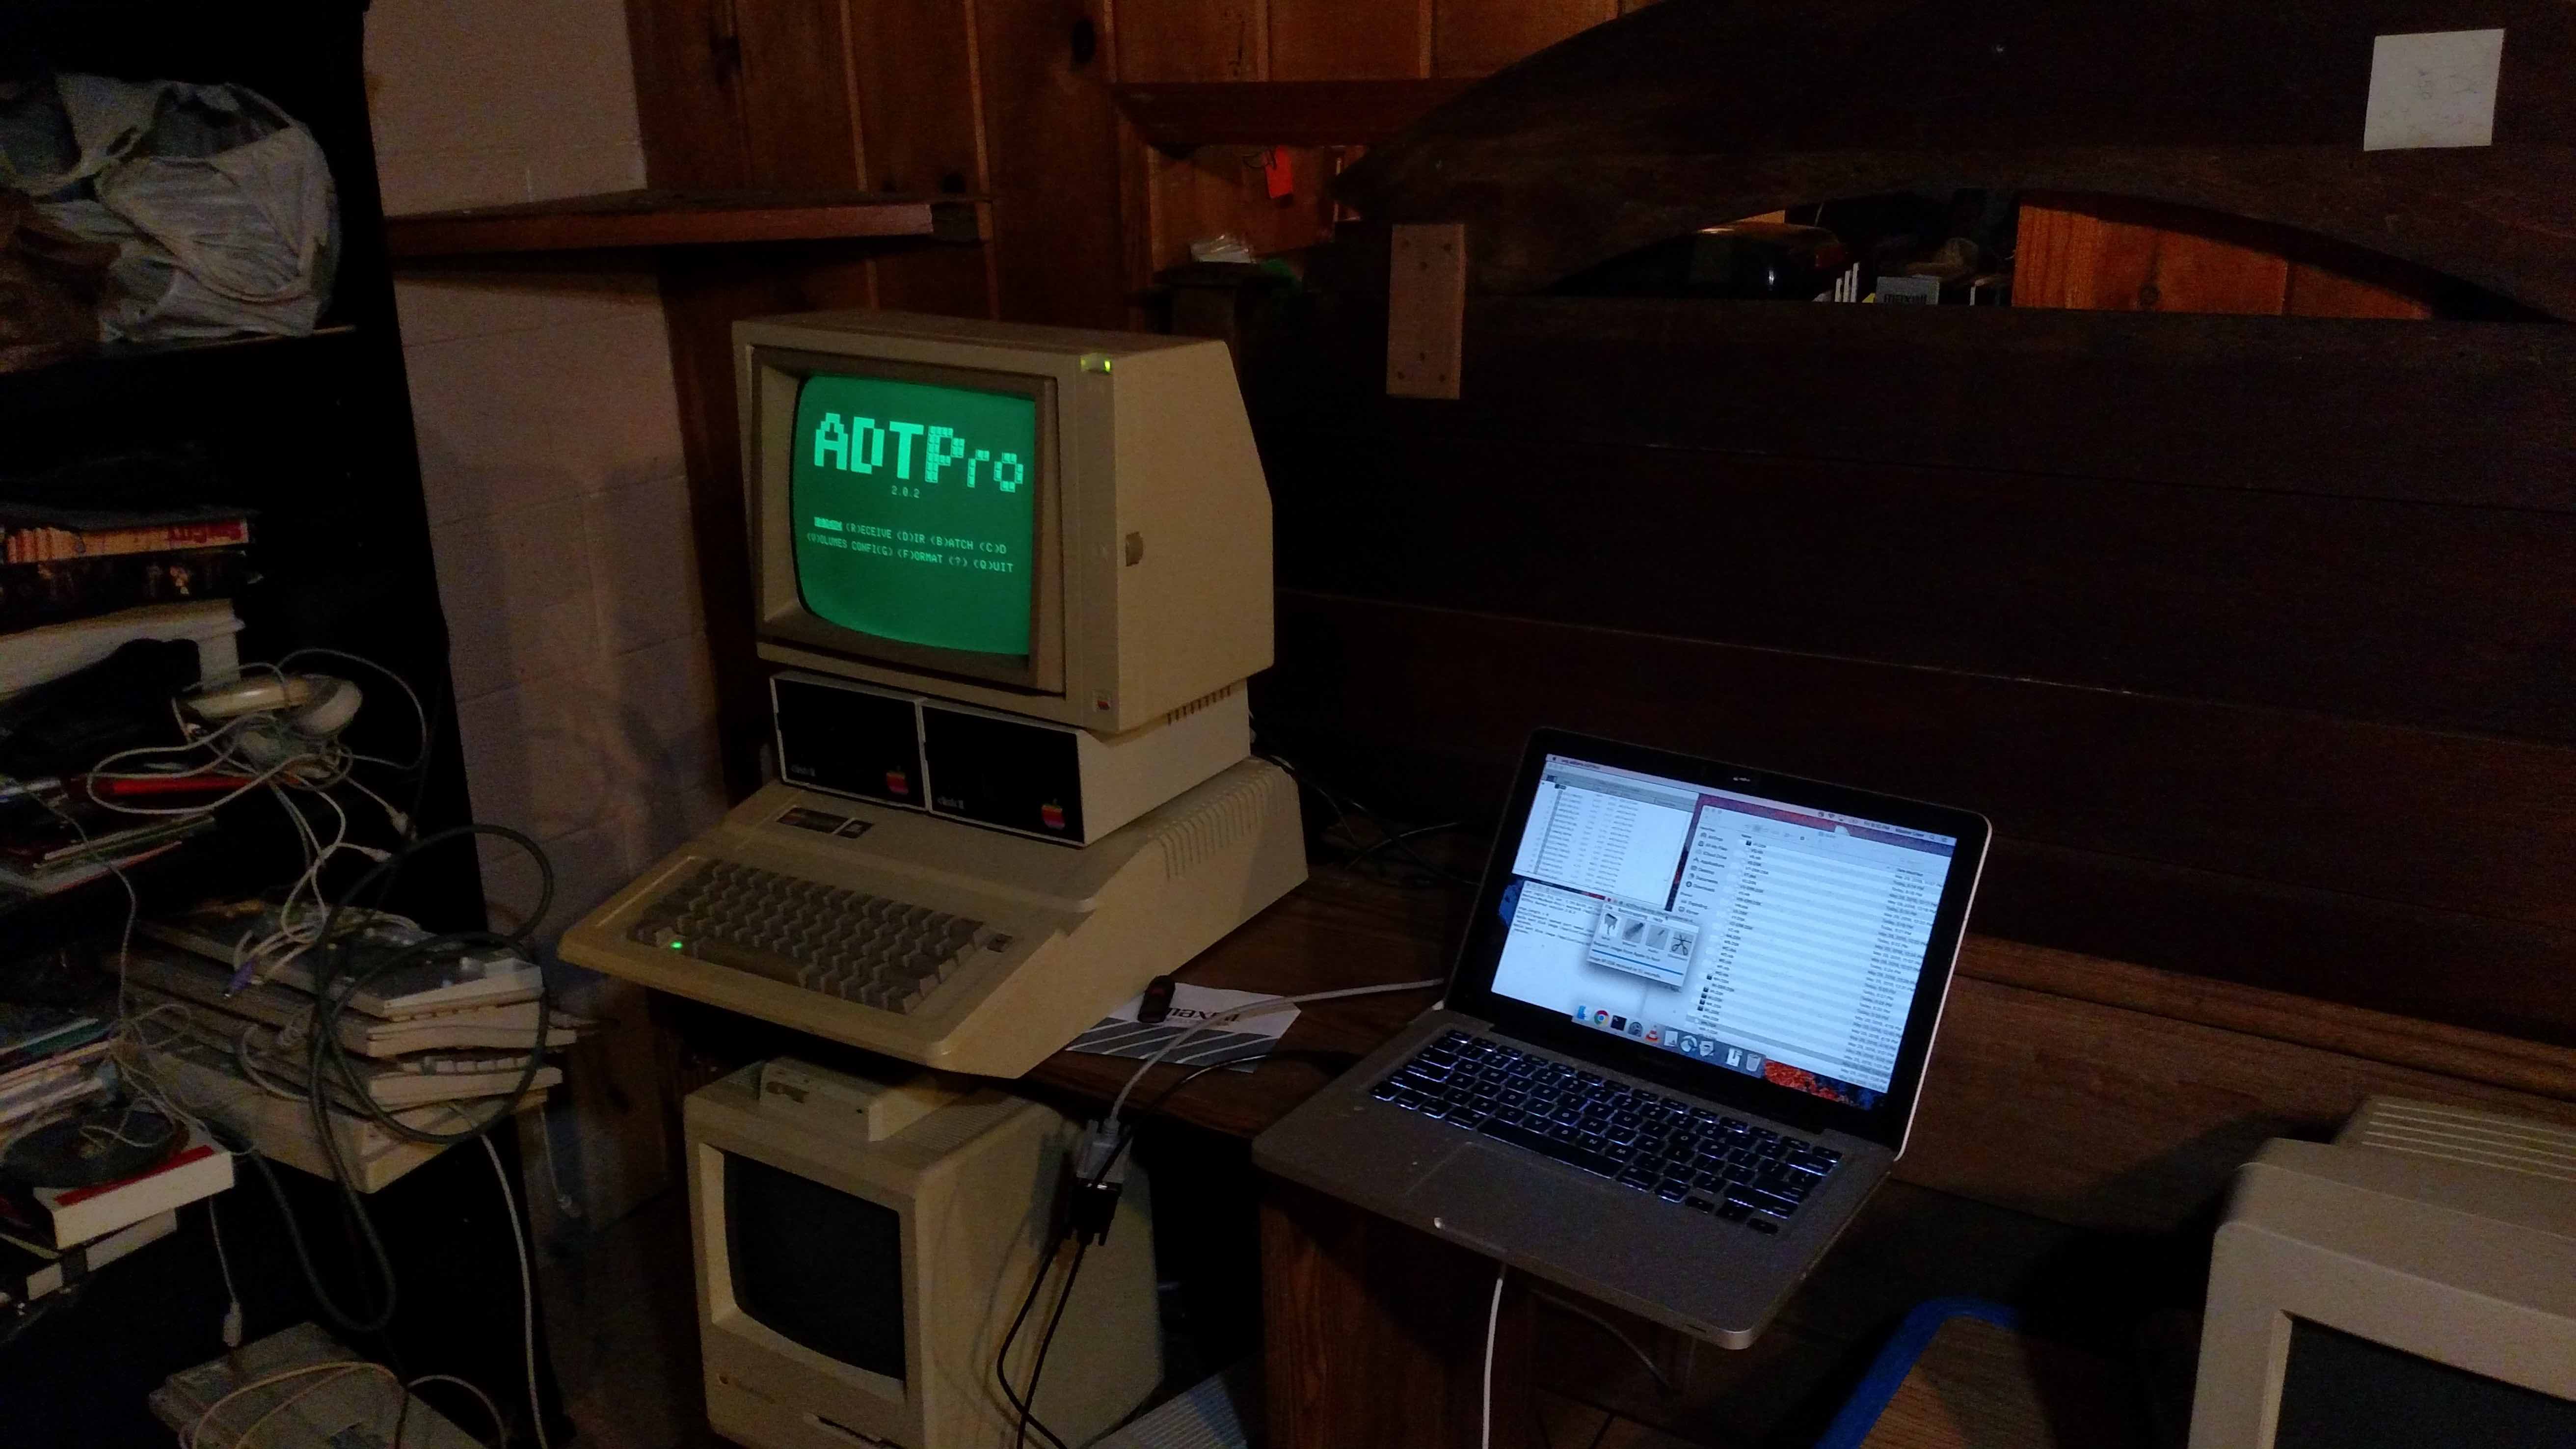 My 5.25 inch floppy migration setup